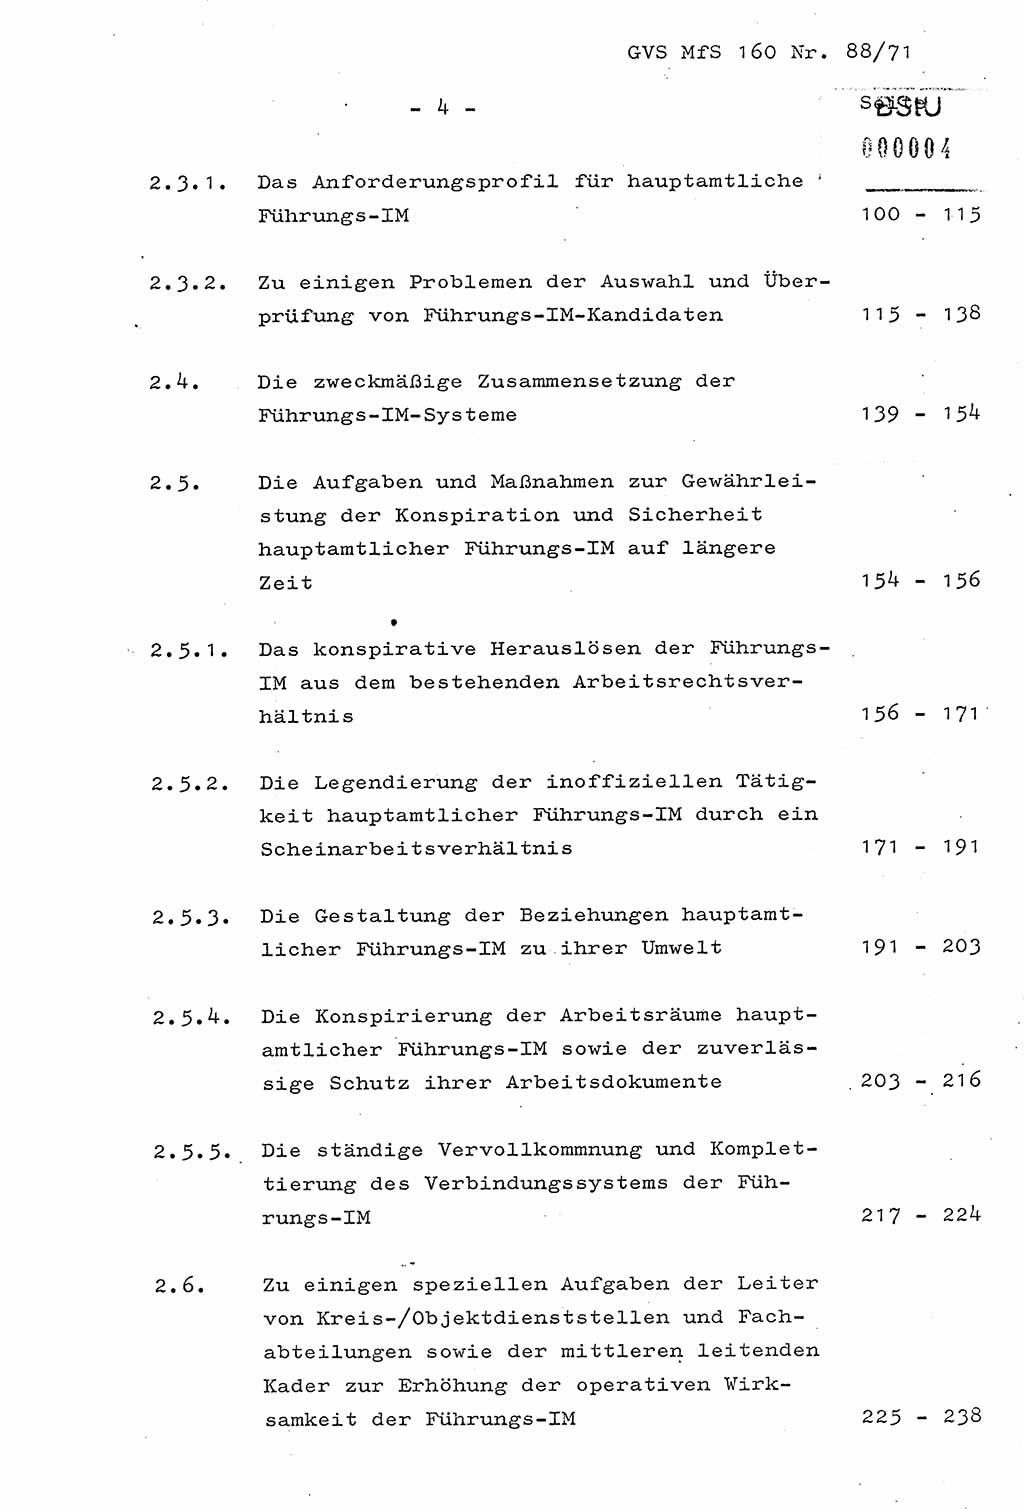 Dissertation Oberstleutnant Josef Schwarz (BV Schwerin), Major Fritz Amm (JHS), Hauptmann Peter Gräßler (JHS), Ministerium für Staatssicherheit (MfS) [Deutsche Demokratische Republik (DDR)], Juristische Hochschule (JHS), Geheime Verschlußsache (GVS) 160-88/71, Potsdam 1972, Seite 4 (Diss. MfS DDR JHS GVS 160-88/71 1972, S. 4)